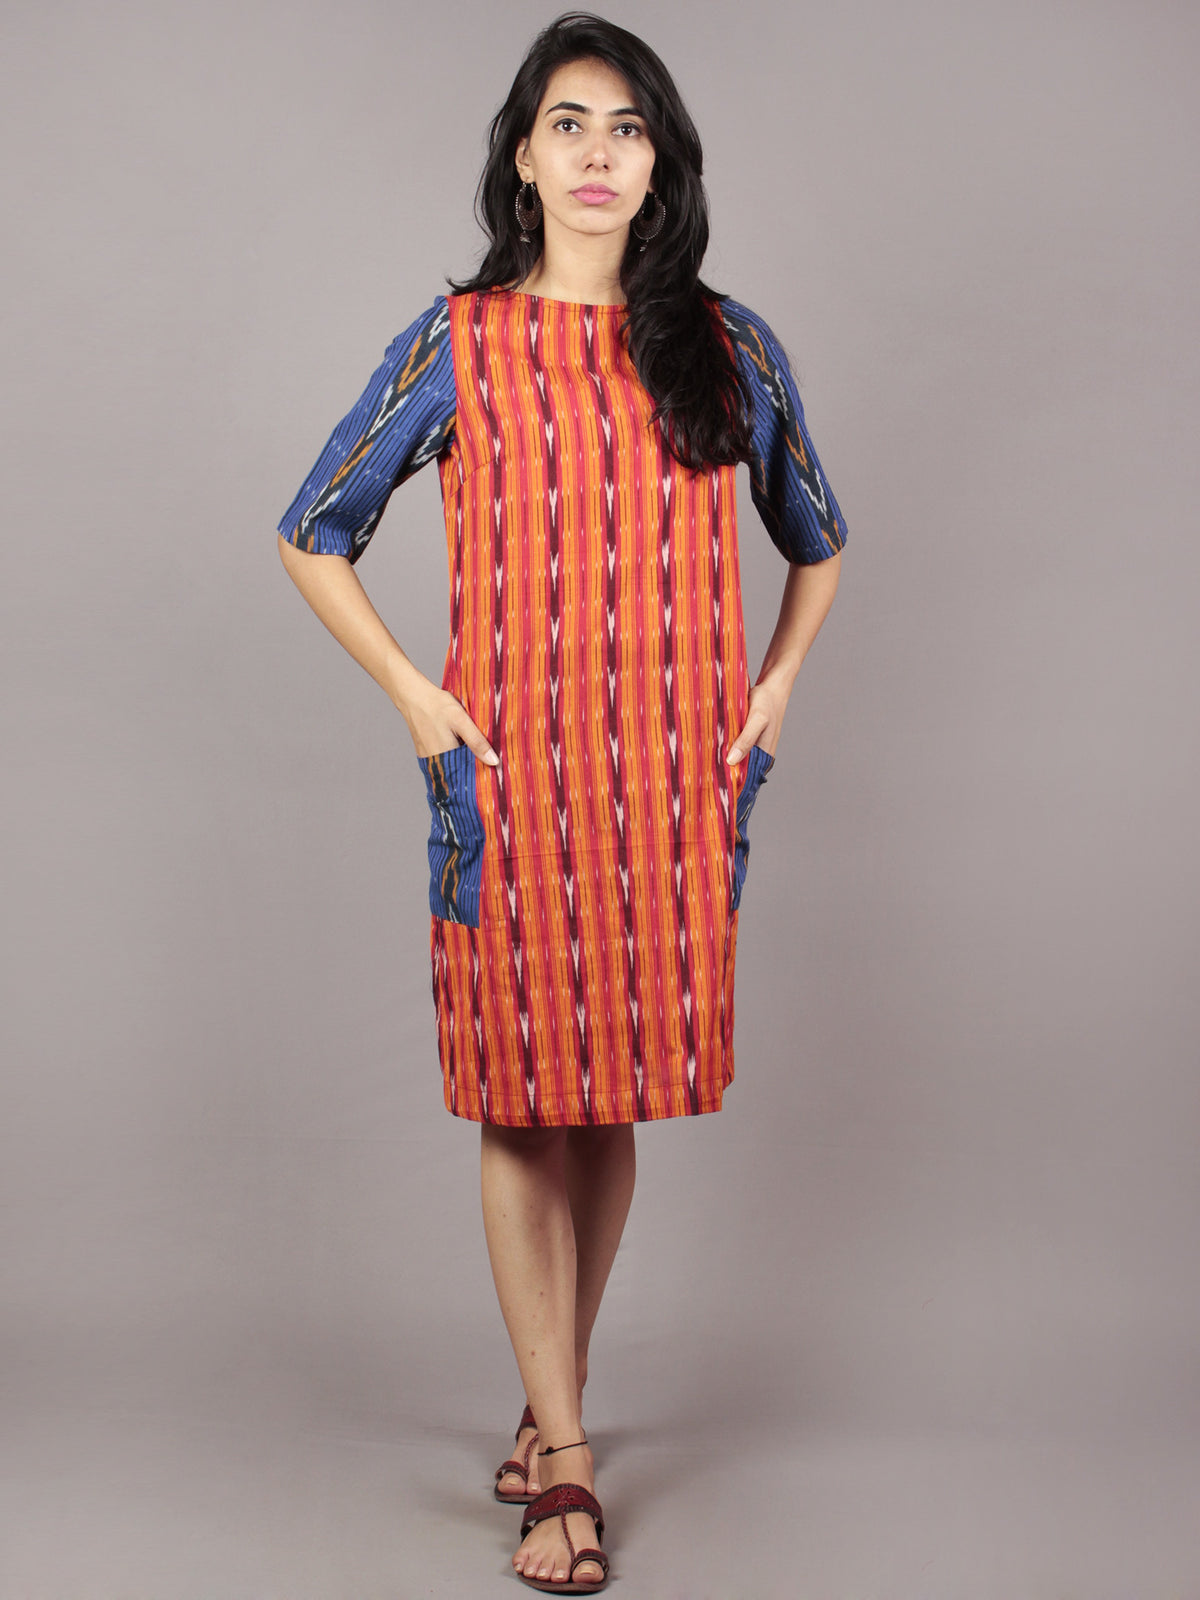 Red Orange Blue Ivory Black Handwoven Ikat Cotton Dress With Side Pockets & Black Slit - D66F719